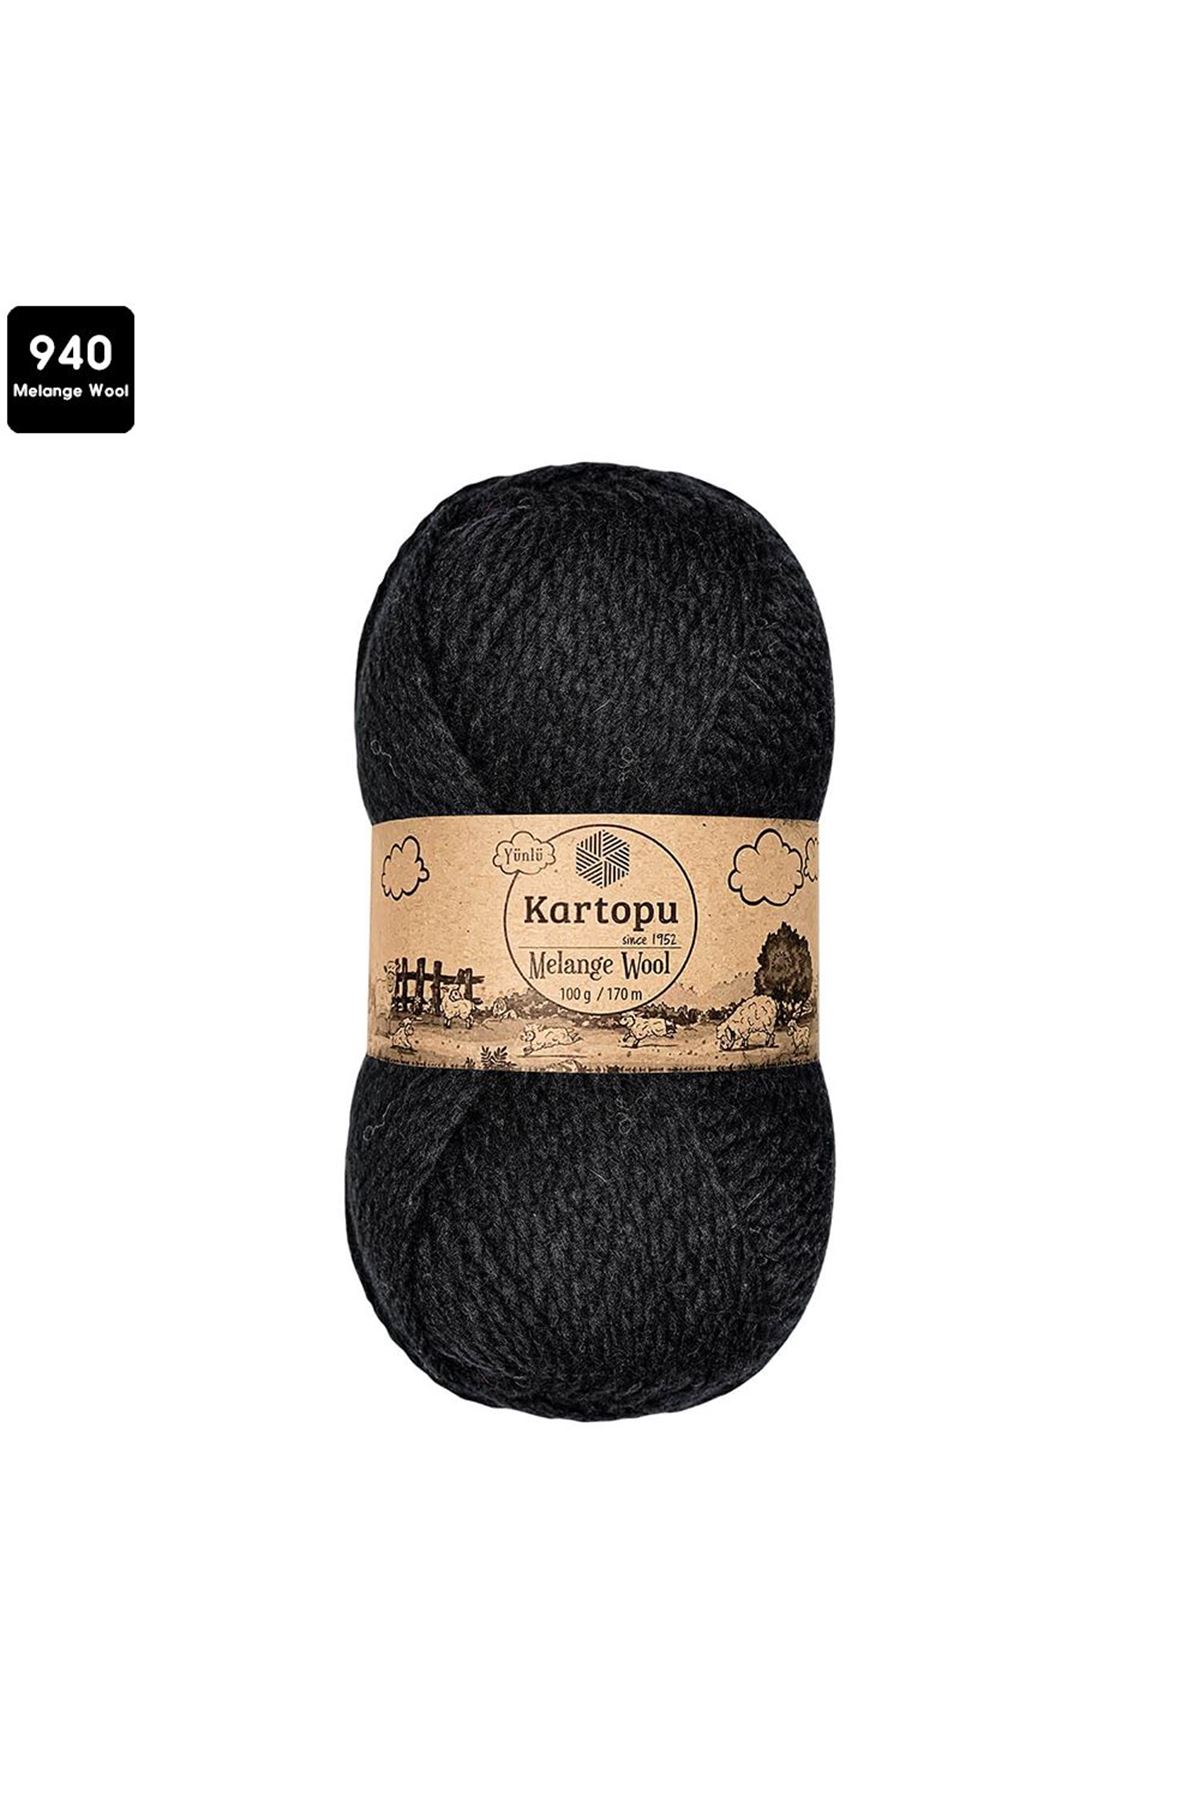 Kartopu Melange Wool Renk No:940